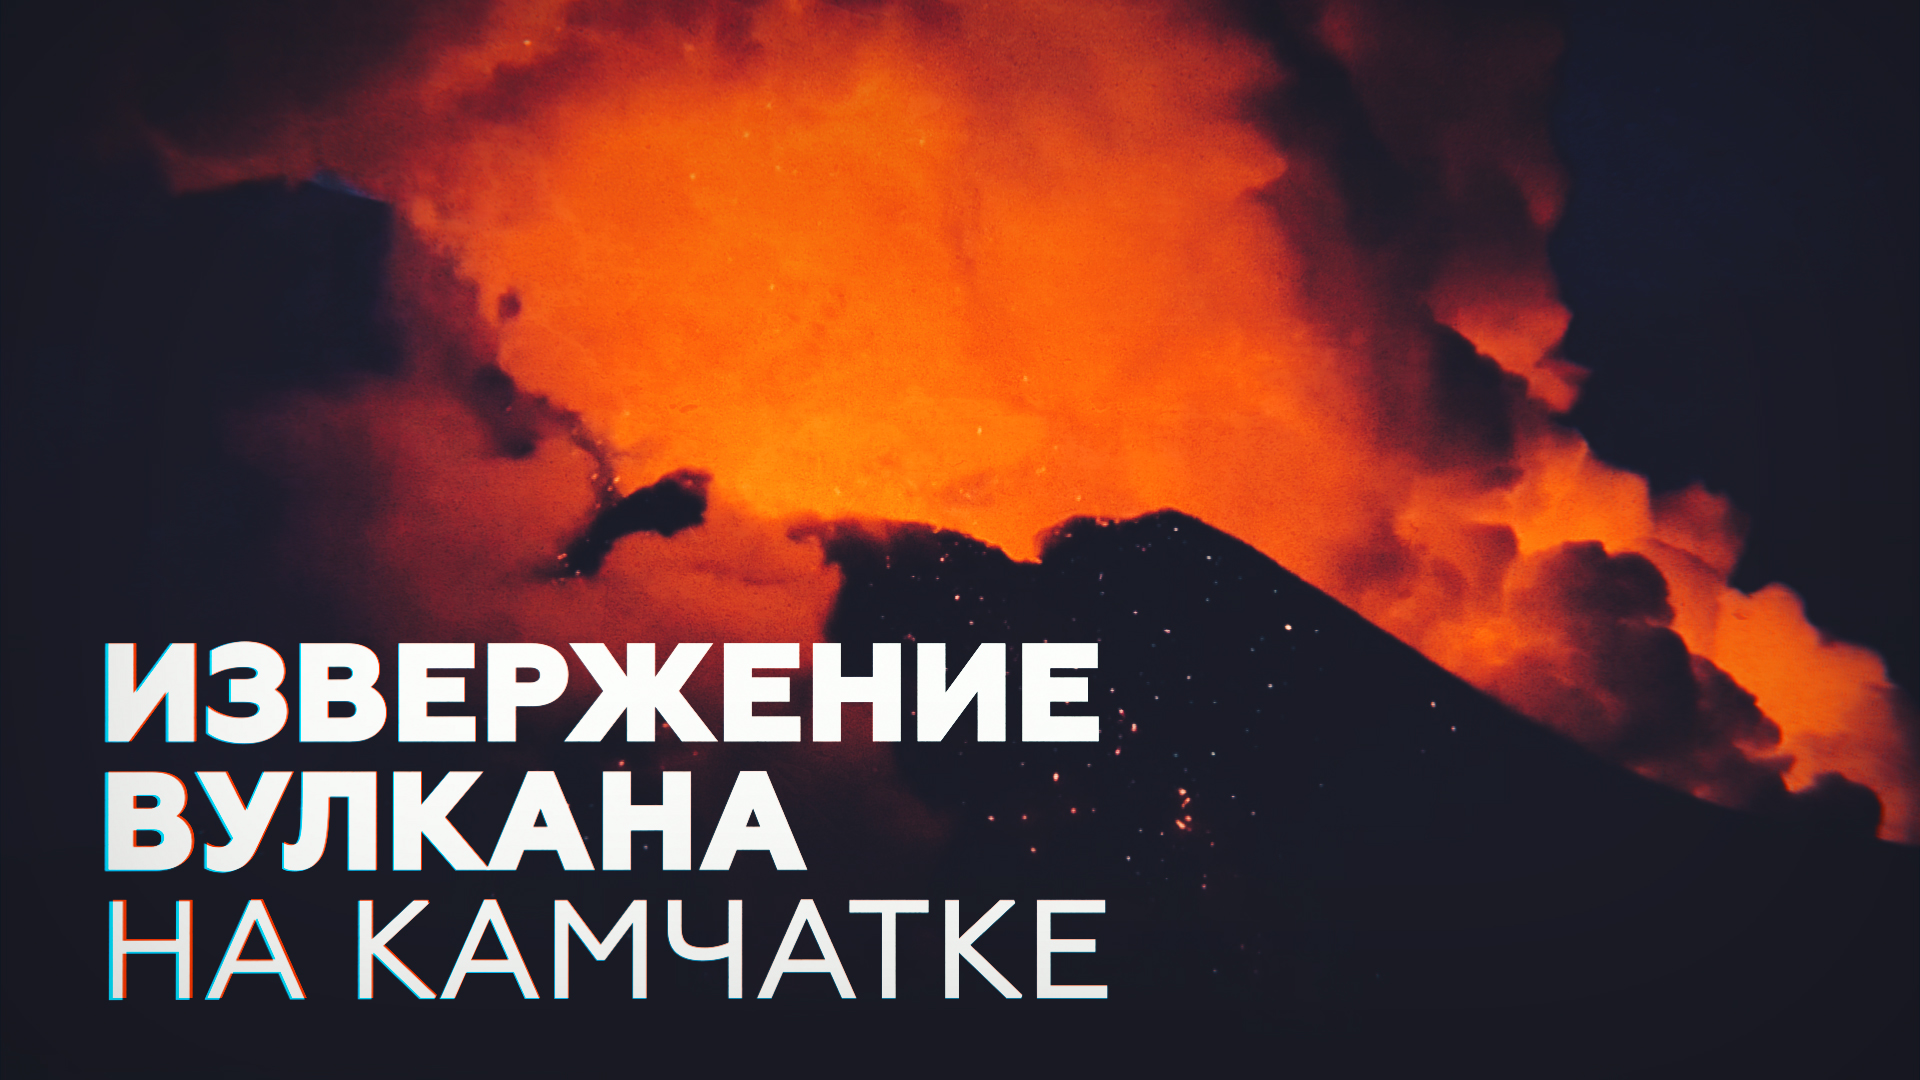 На Камчатке проснулась Ключевская сопка — видео